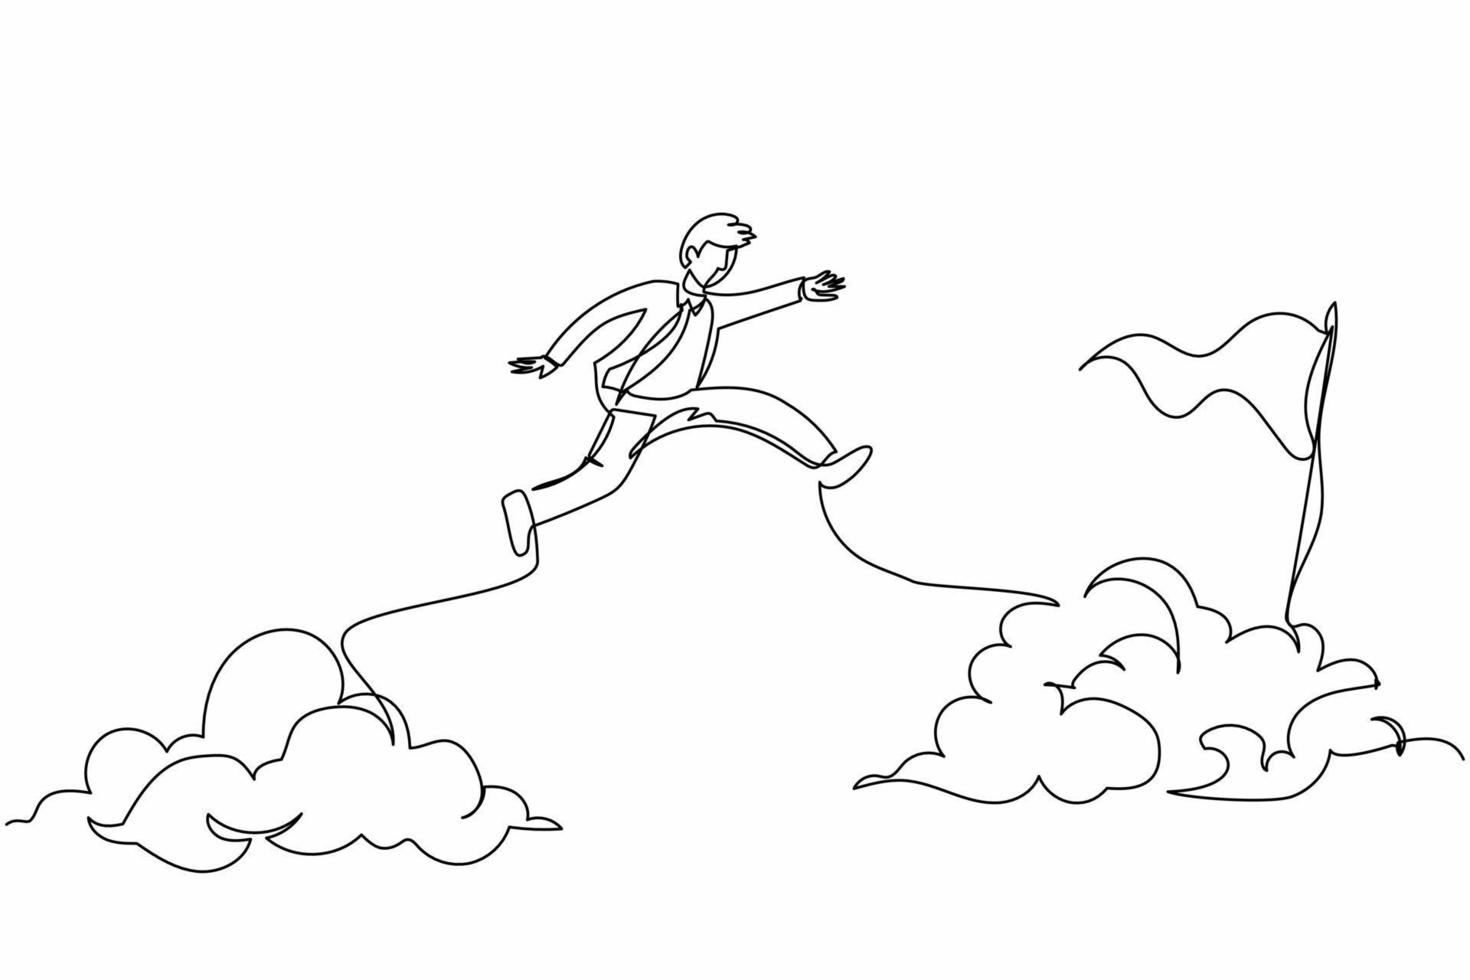 dibujo continuo de una línea hombre de negocios activo salta o salta sobre las nubes para alcanzar su objetivo o bandera de éxito. desafiar su trayectoria profesional. tomando un riesgo. ilustración gráfica de vector de diseño de dibujo de una sola línea